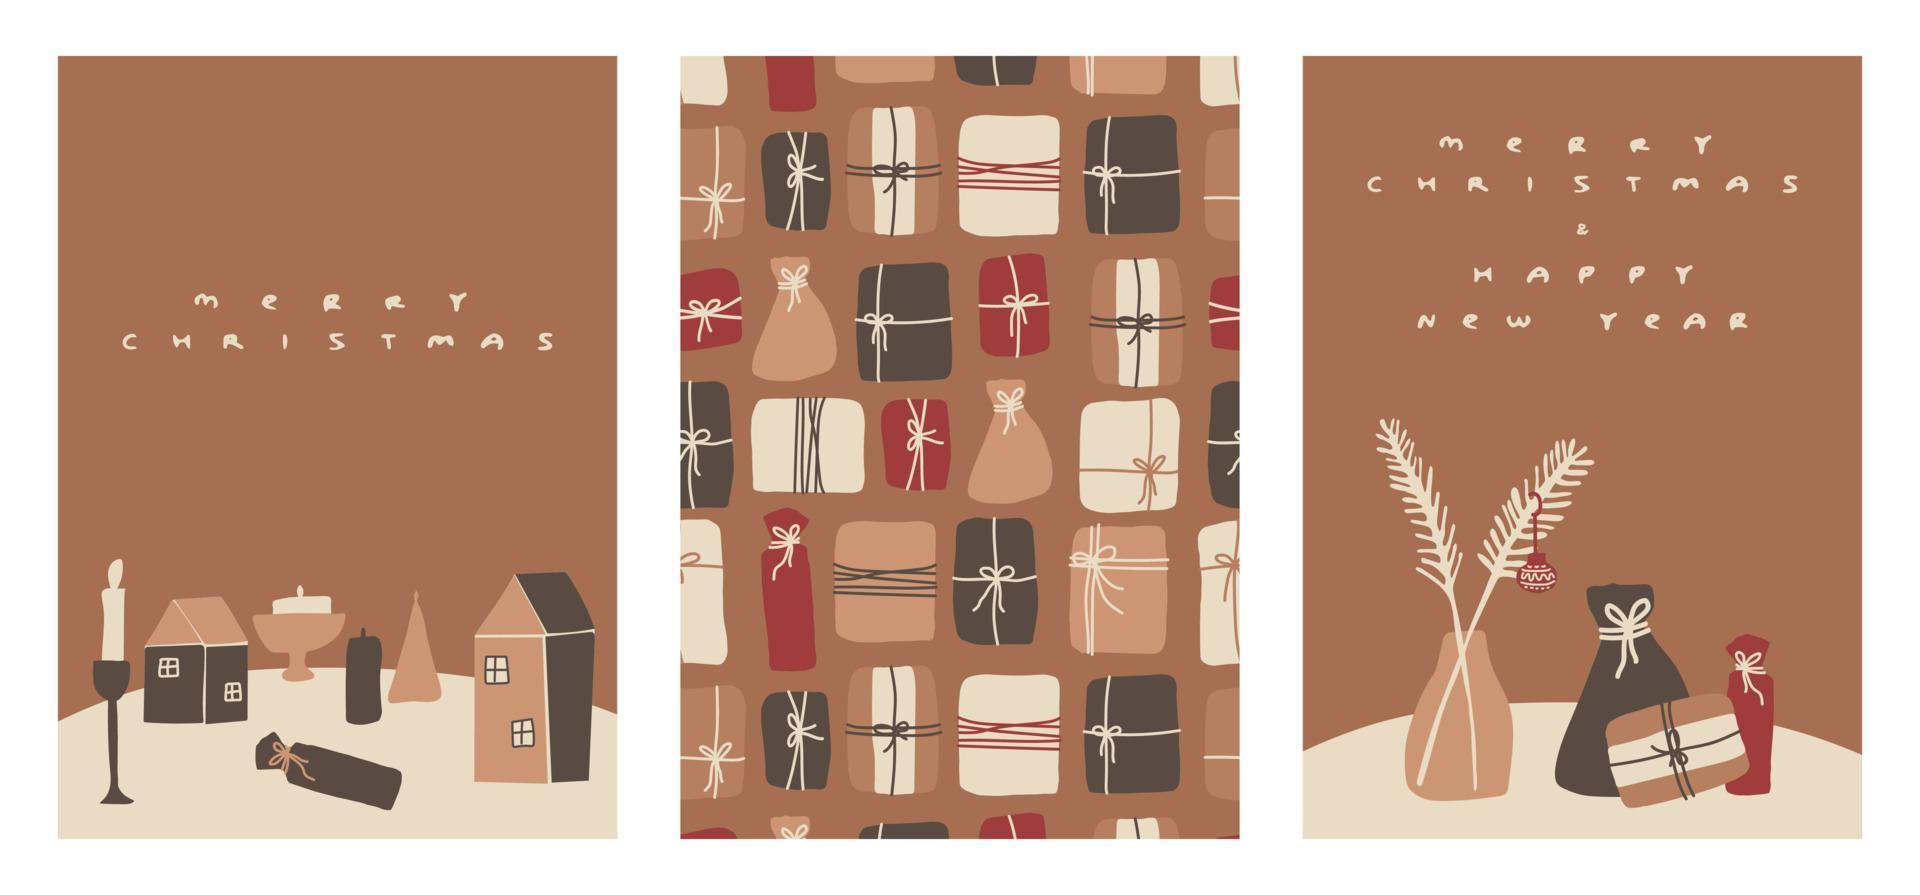 set di carte disegnate a mano per le vacanze invernali. illustrazione vettoriale con case, regali, candele, candelieri, rami, alberi e altri elementi per natale e capodanno